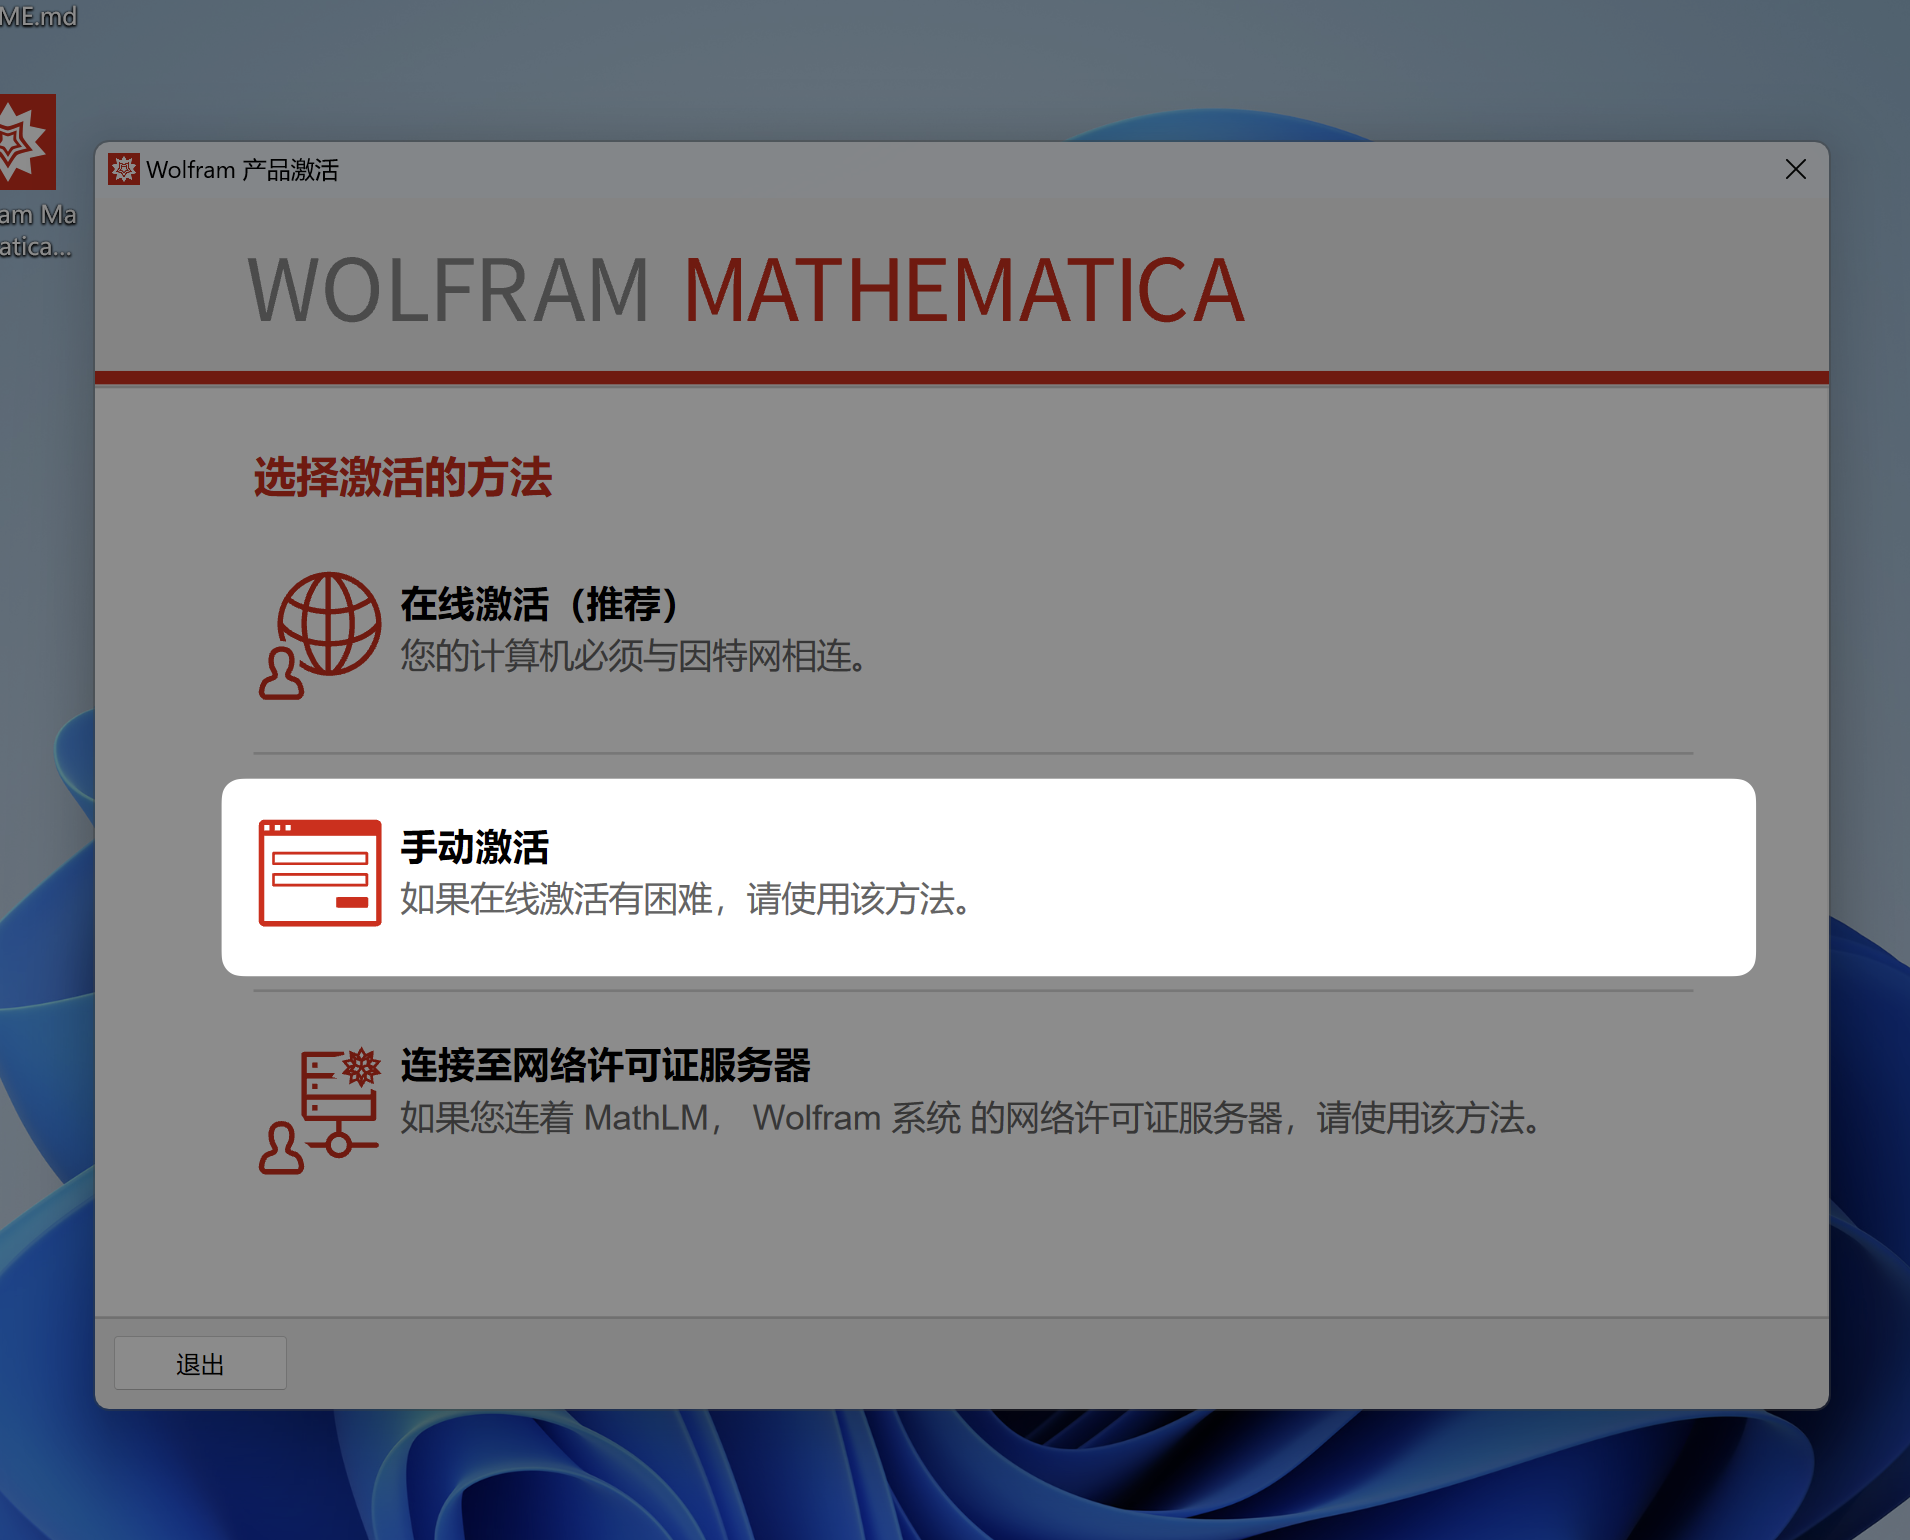 「互联网速记」也许是最优雅的 Wolfram Mathematica 破解方式 - 6